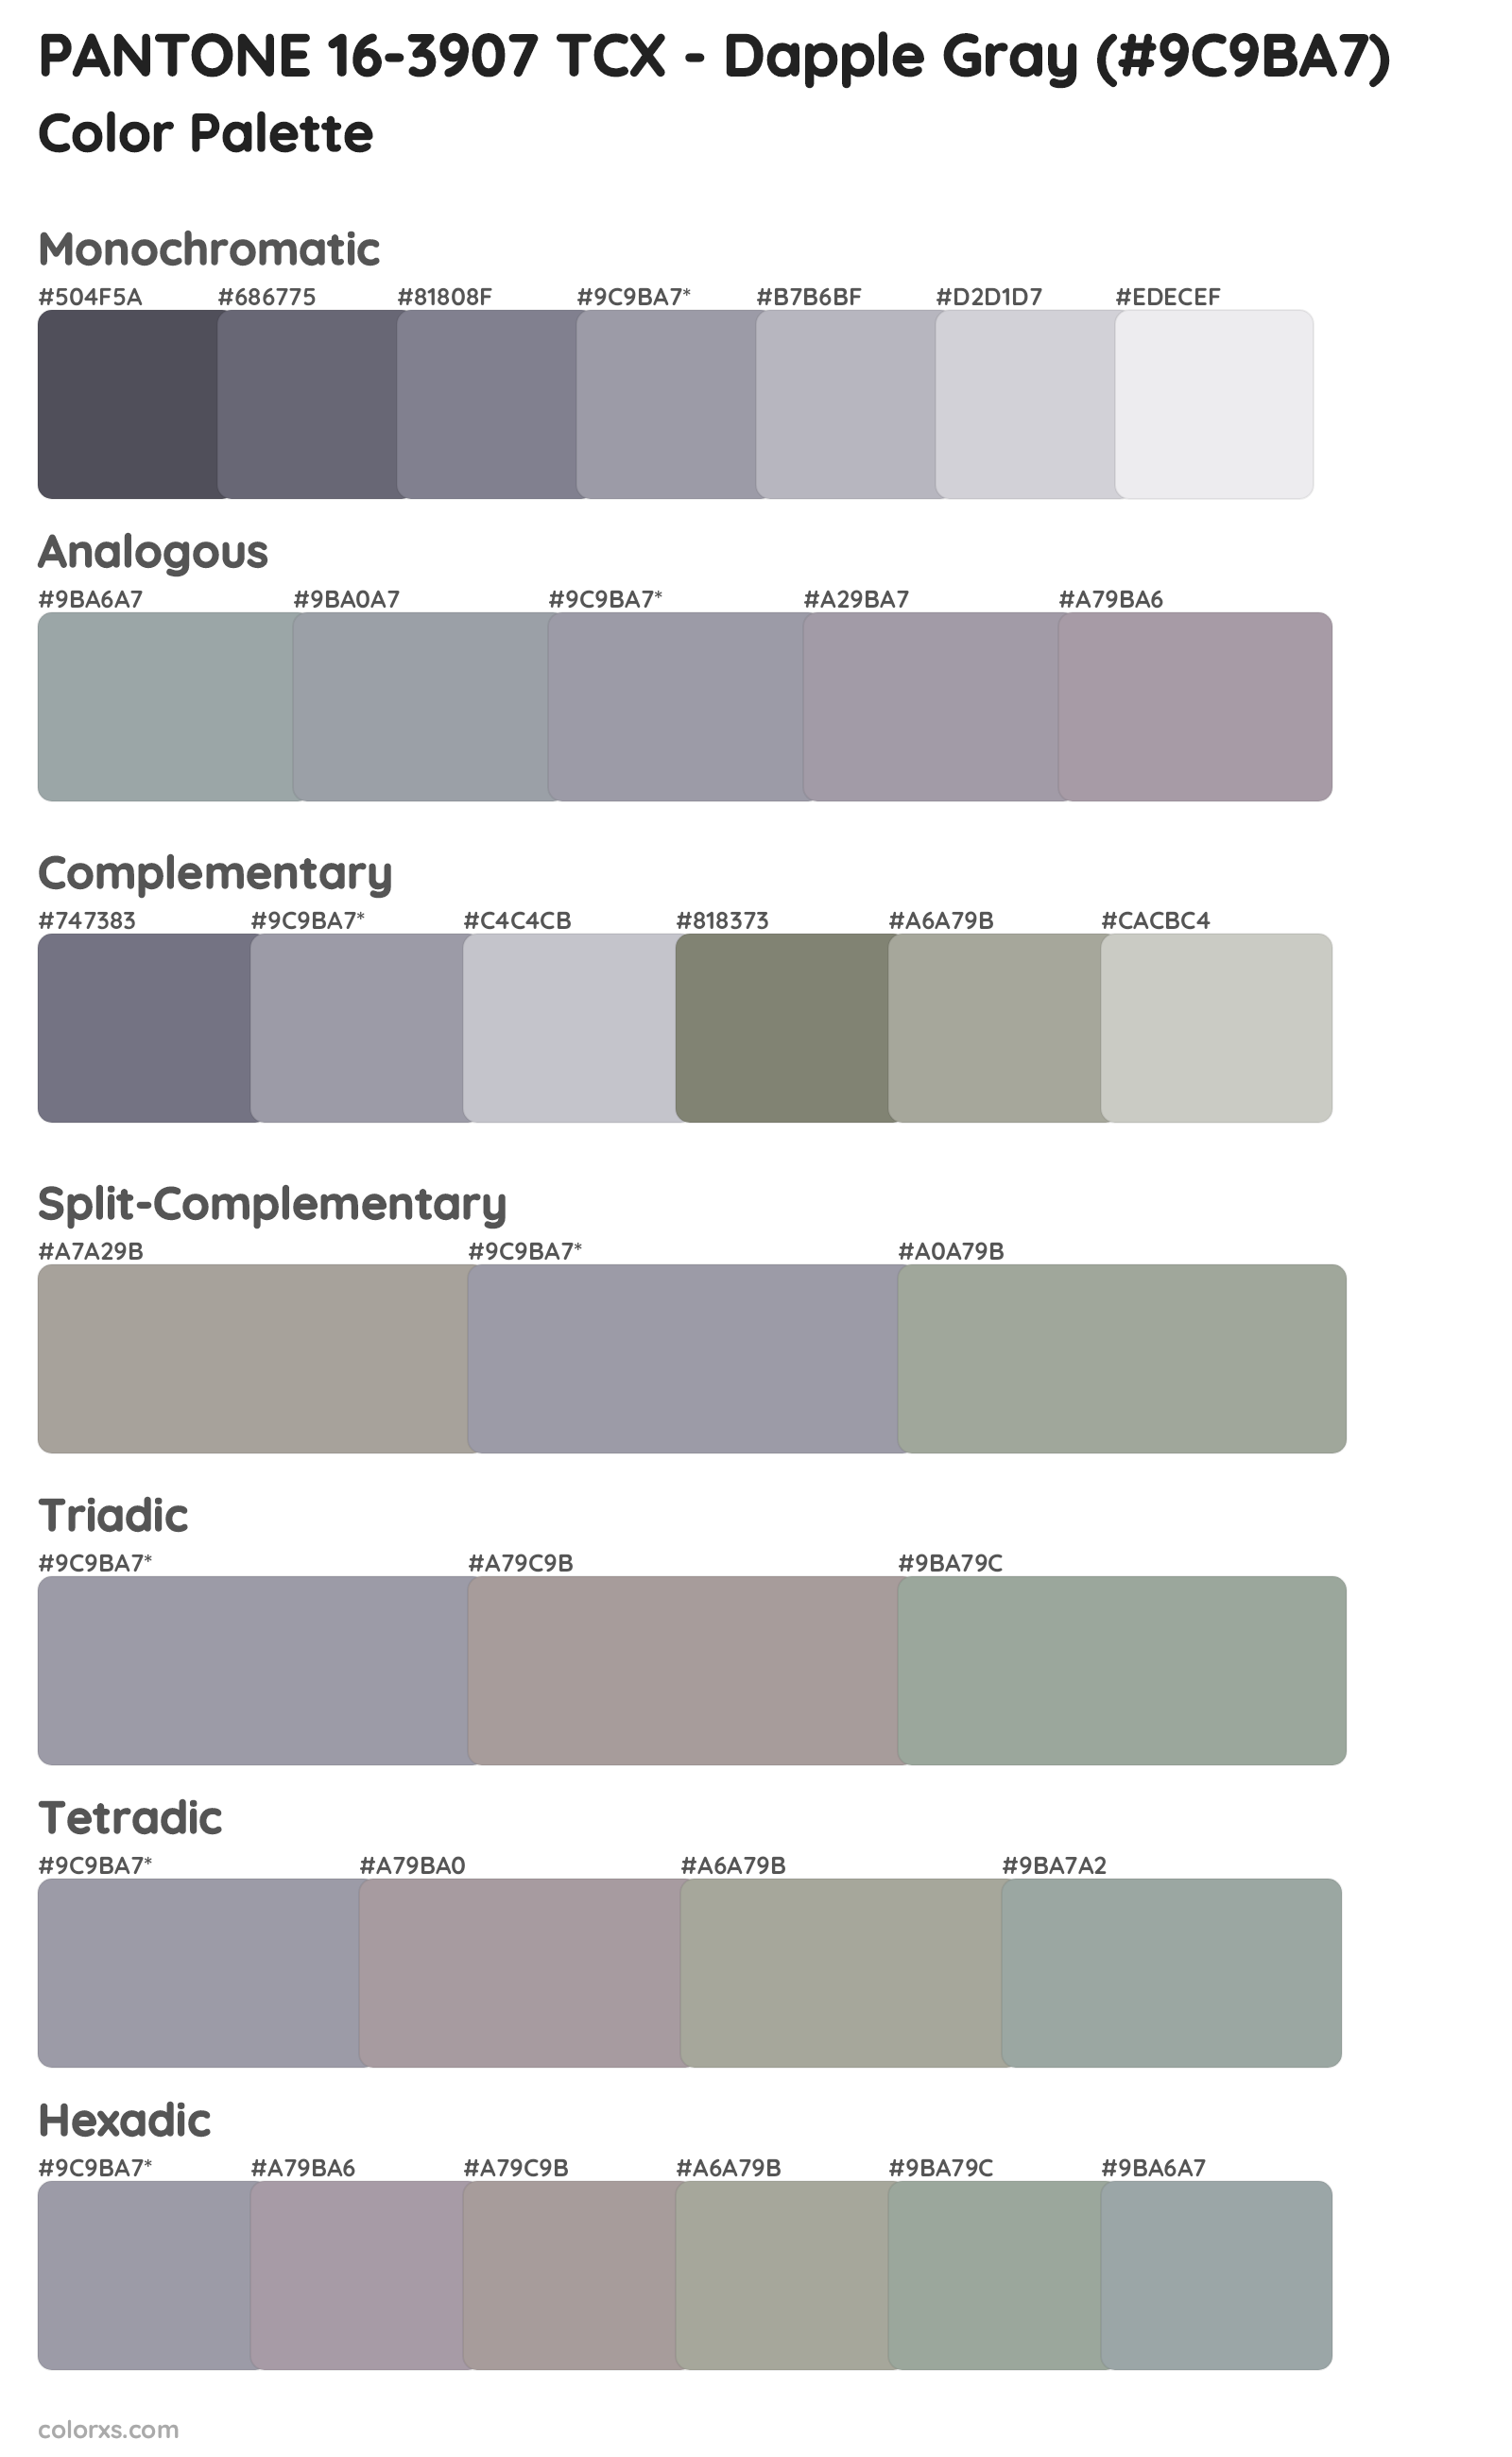 PANTONE 16-3907 TCX - Dapple Gray Color Scheme Palettes